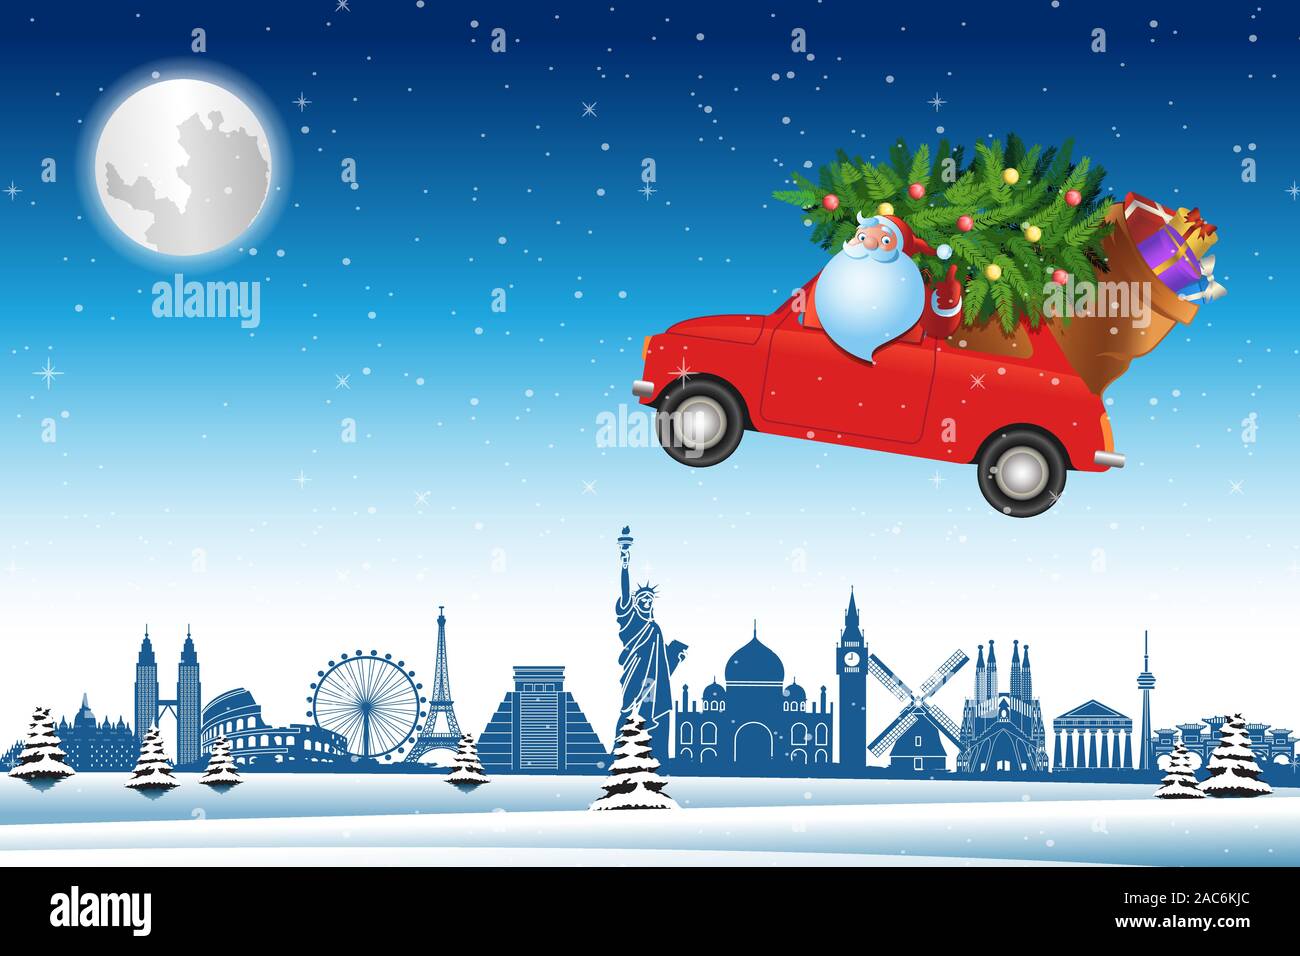 Santa Claus guidare auto rossa volare oltre i punti di riferimento del mondo attraverso la neve con albero di Natale per inviare regali a tutti,illustrazione vettoriale Illustrazione Vettoriale